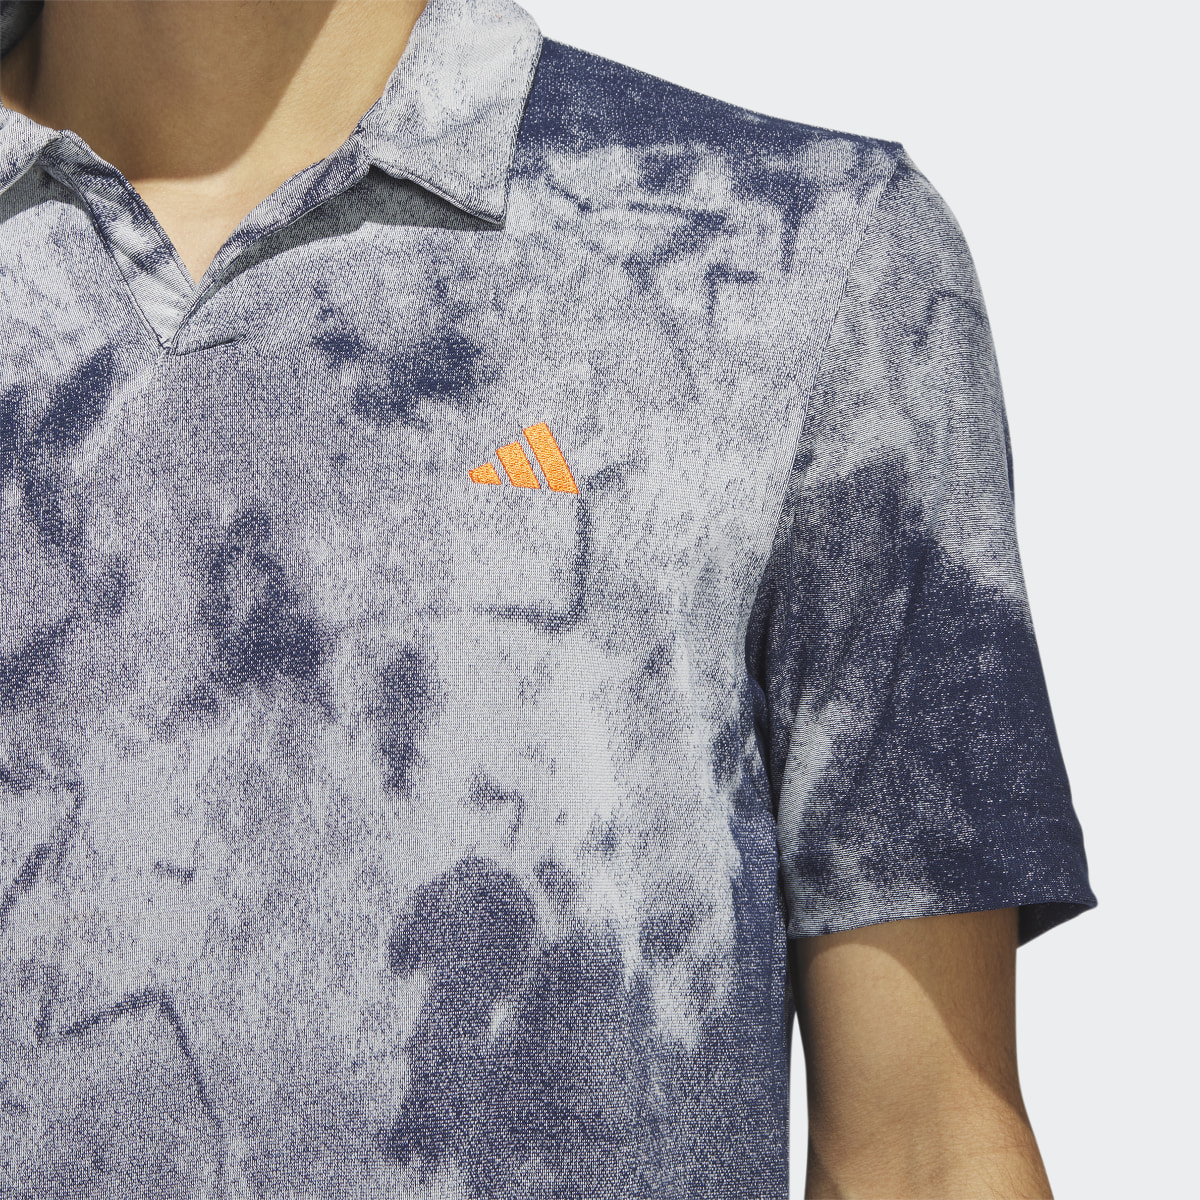 Adidas Made to be Remade No-Button Jacquard Shirt. 7